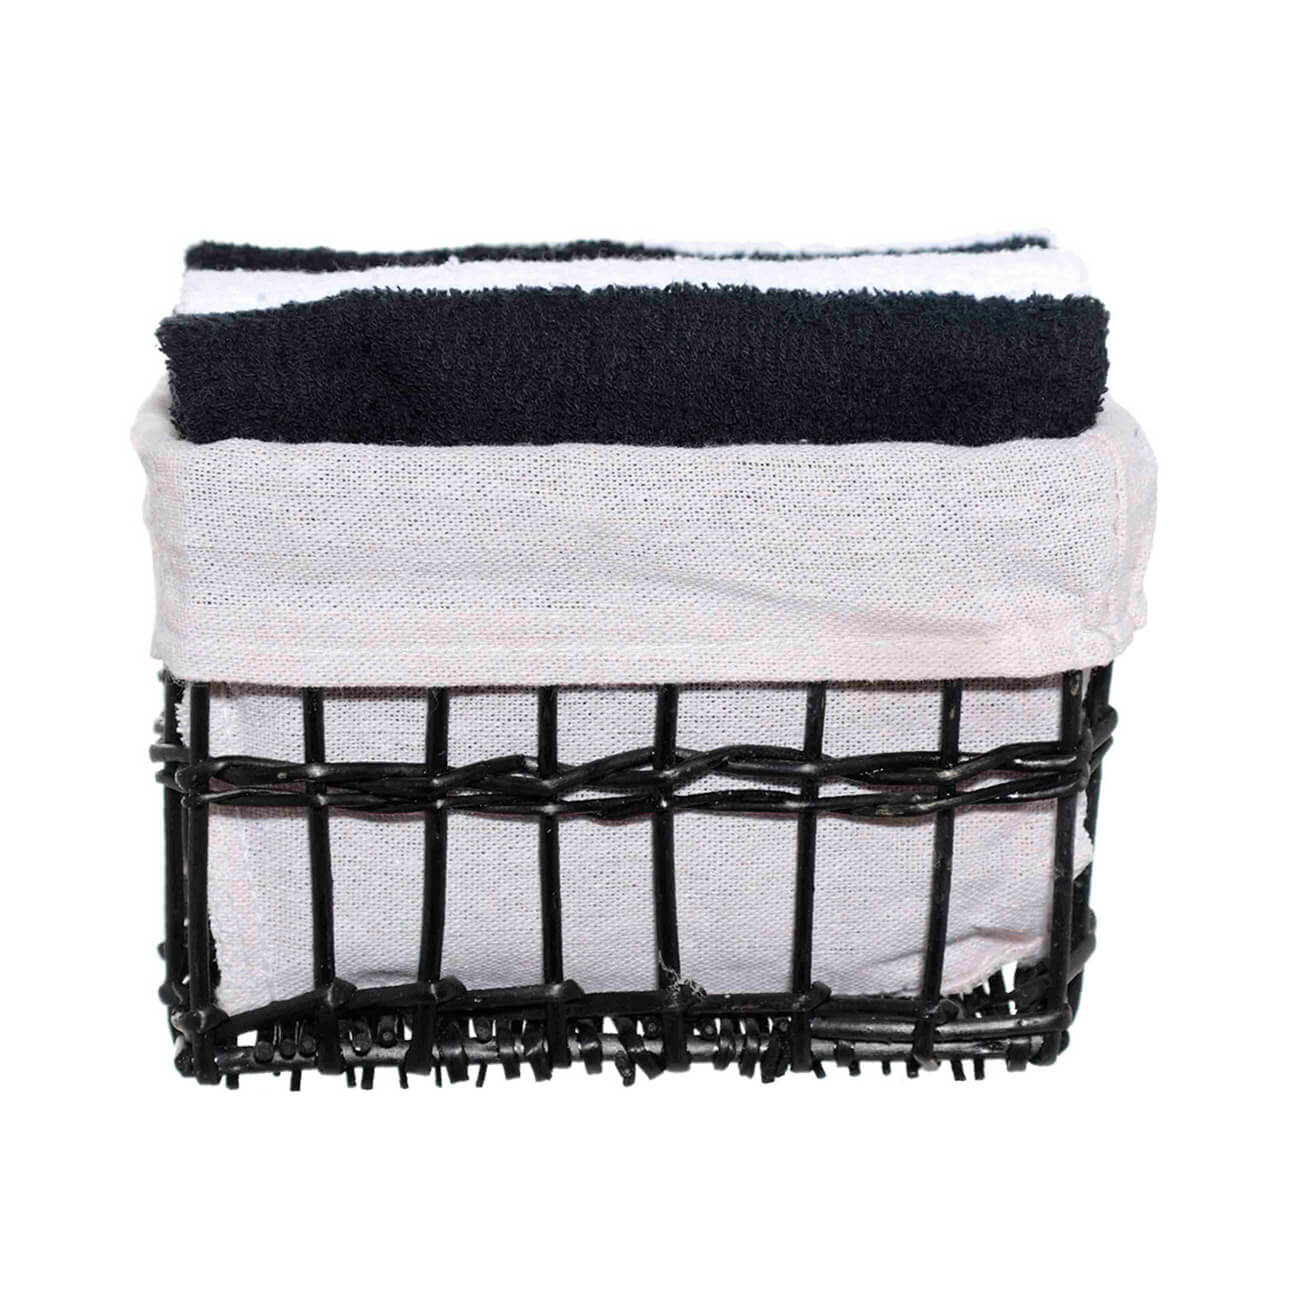 Полотенце, 30х30 см, 4 шт, в корзине, хлопок/лоза, черное/белое, Basket towel полотенце towel pinguin m 40 x 80 голубой p 4053